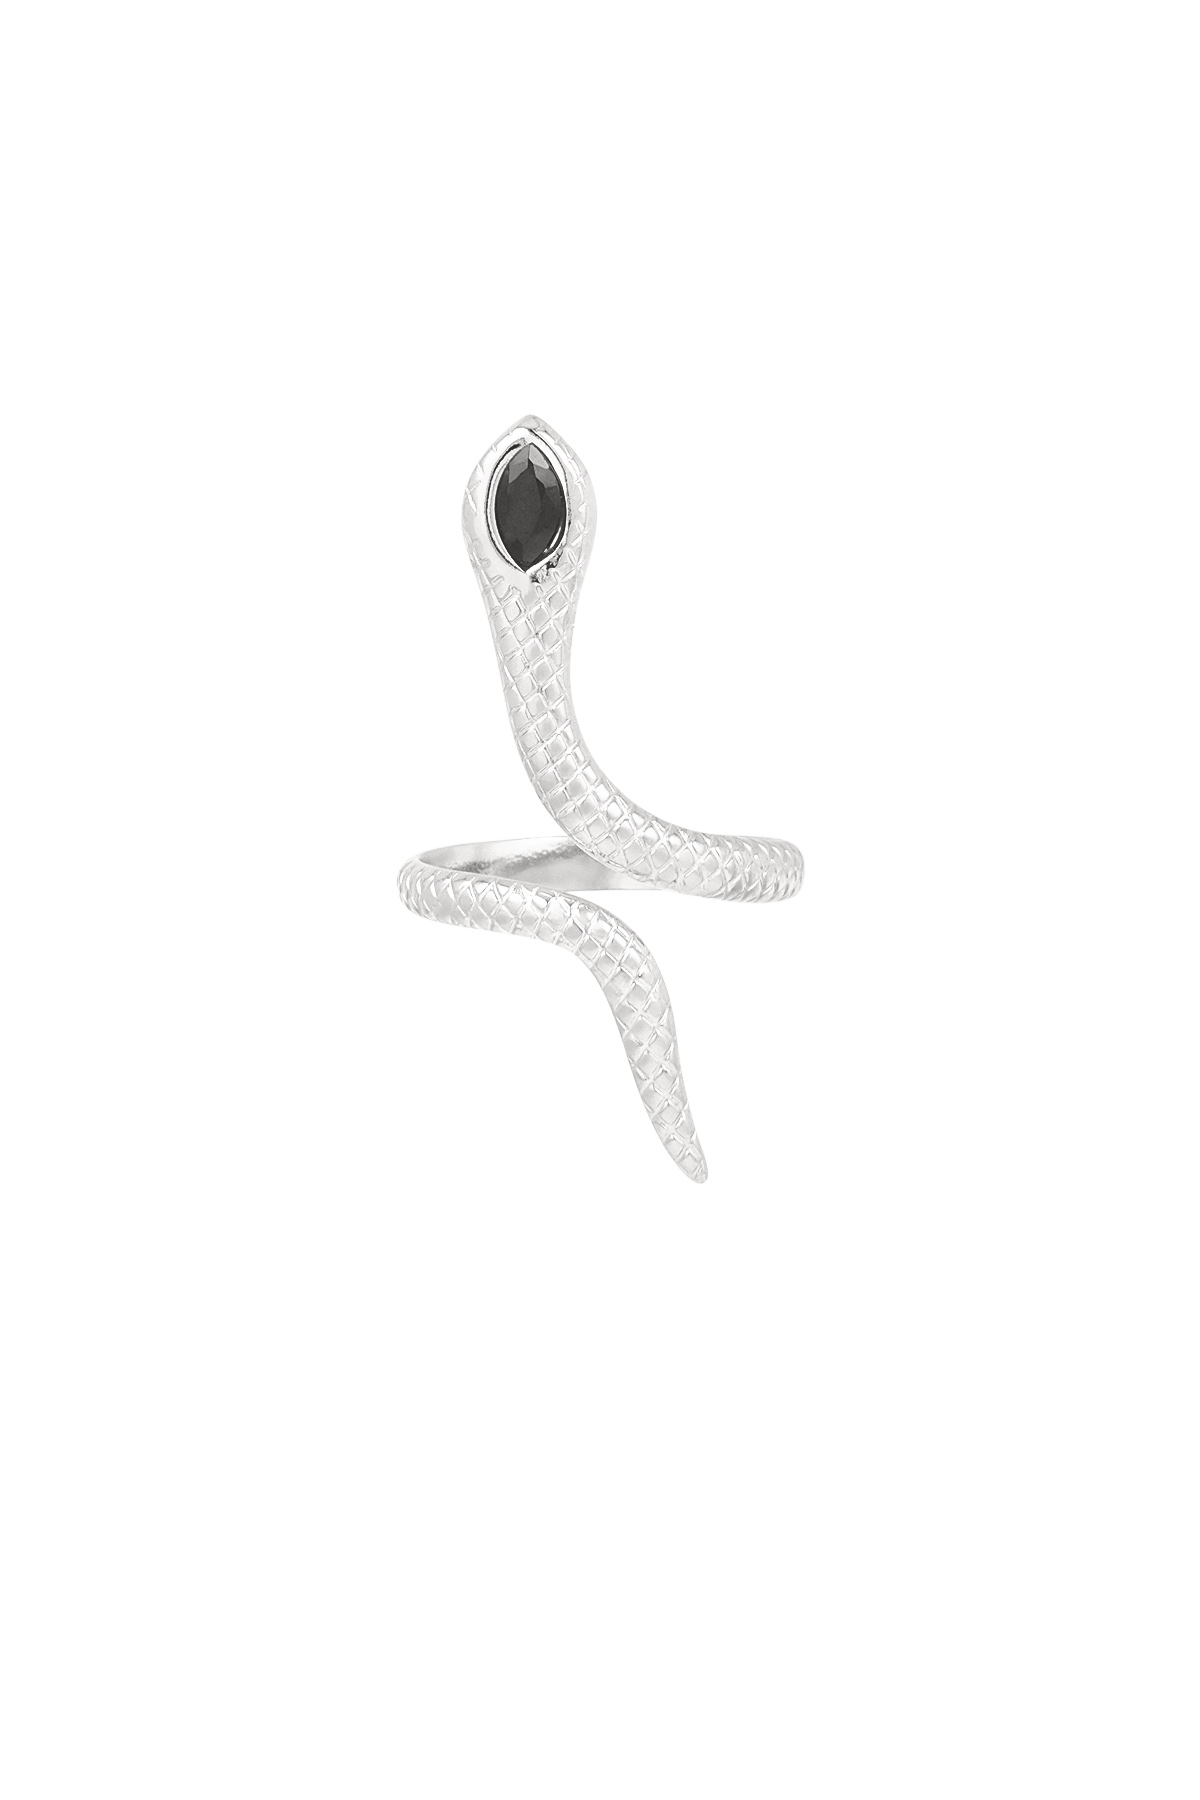 Zwarte slang ring - zilver  Afbeelding4